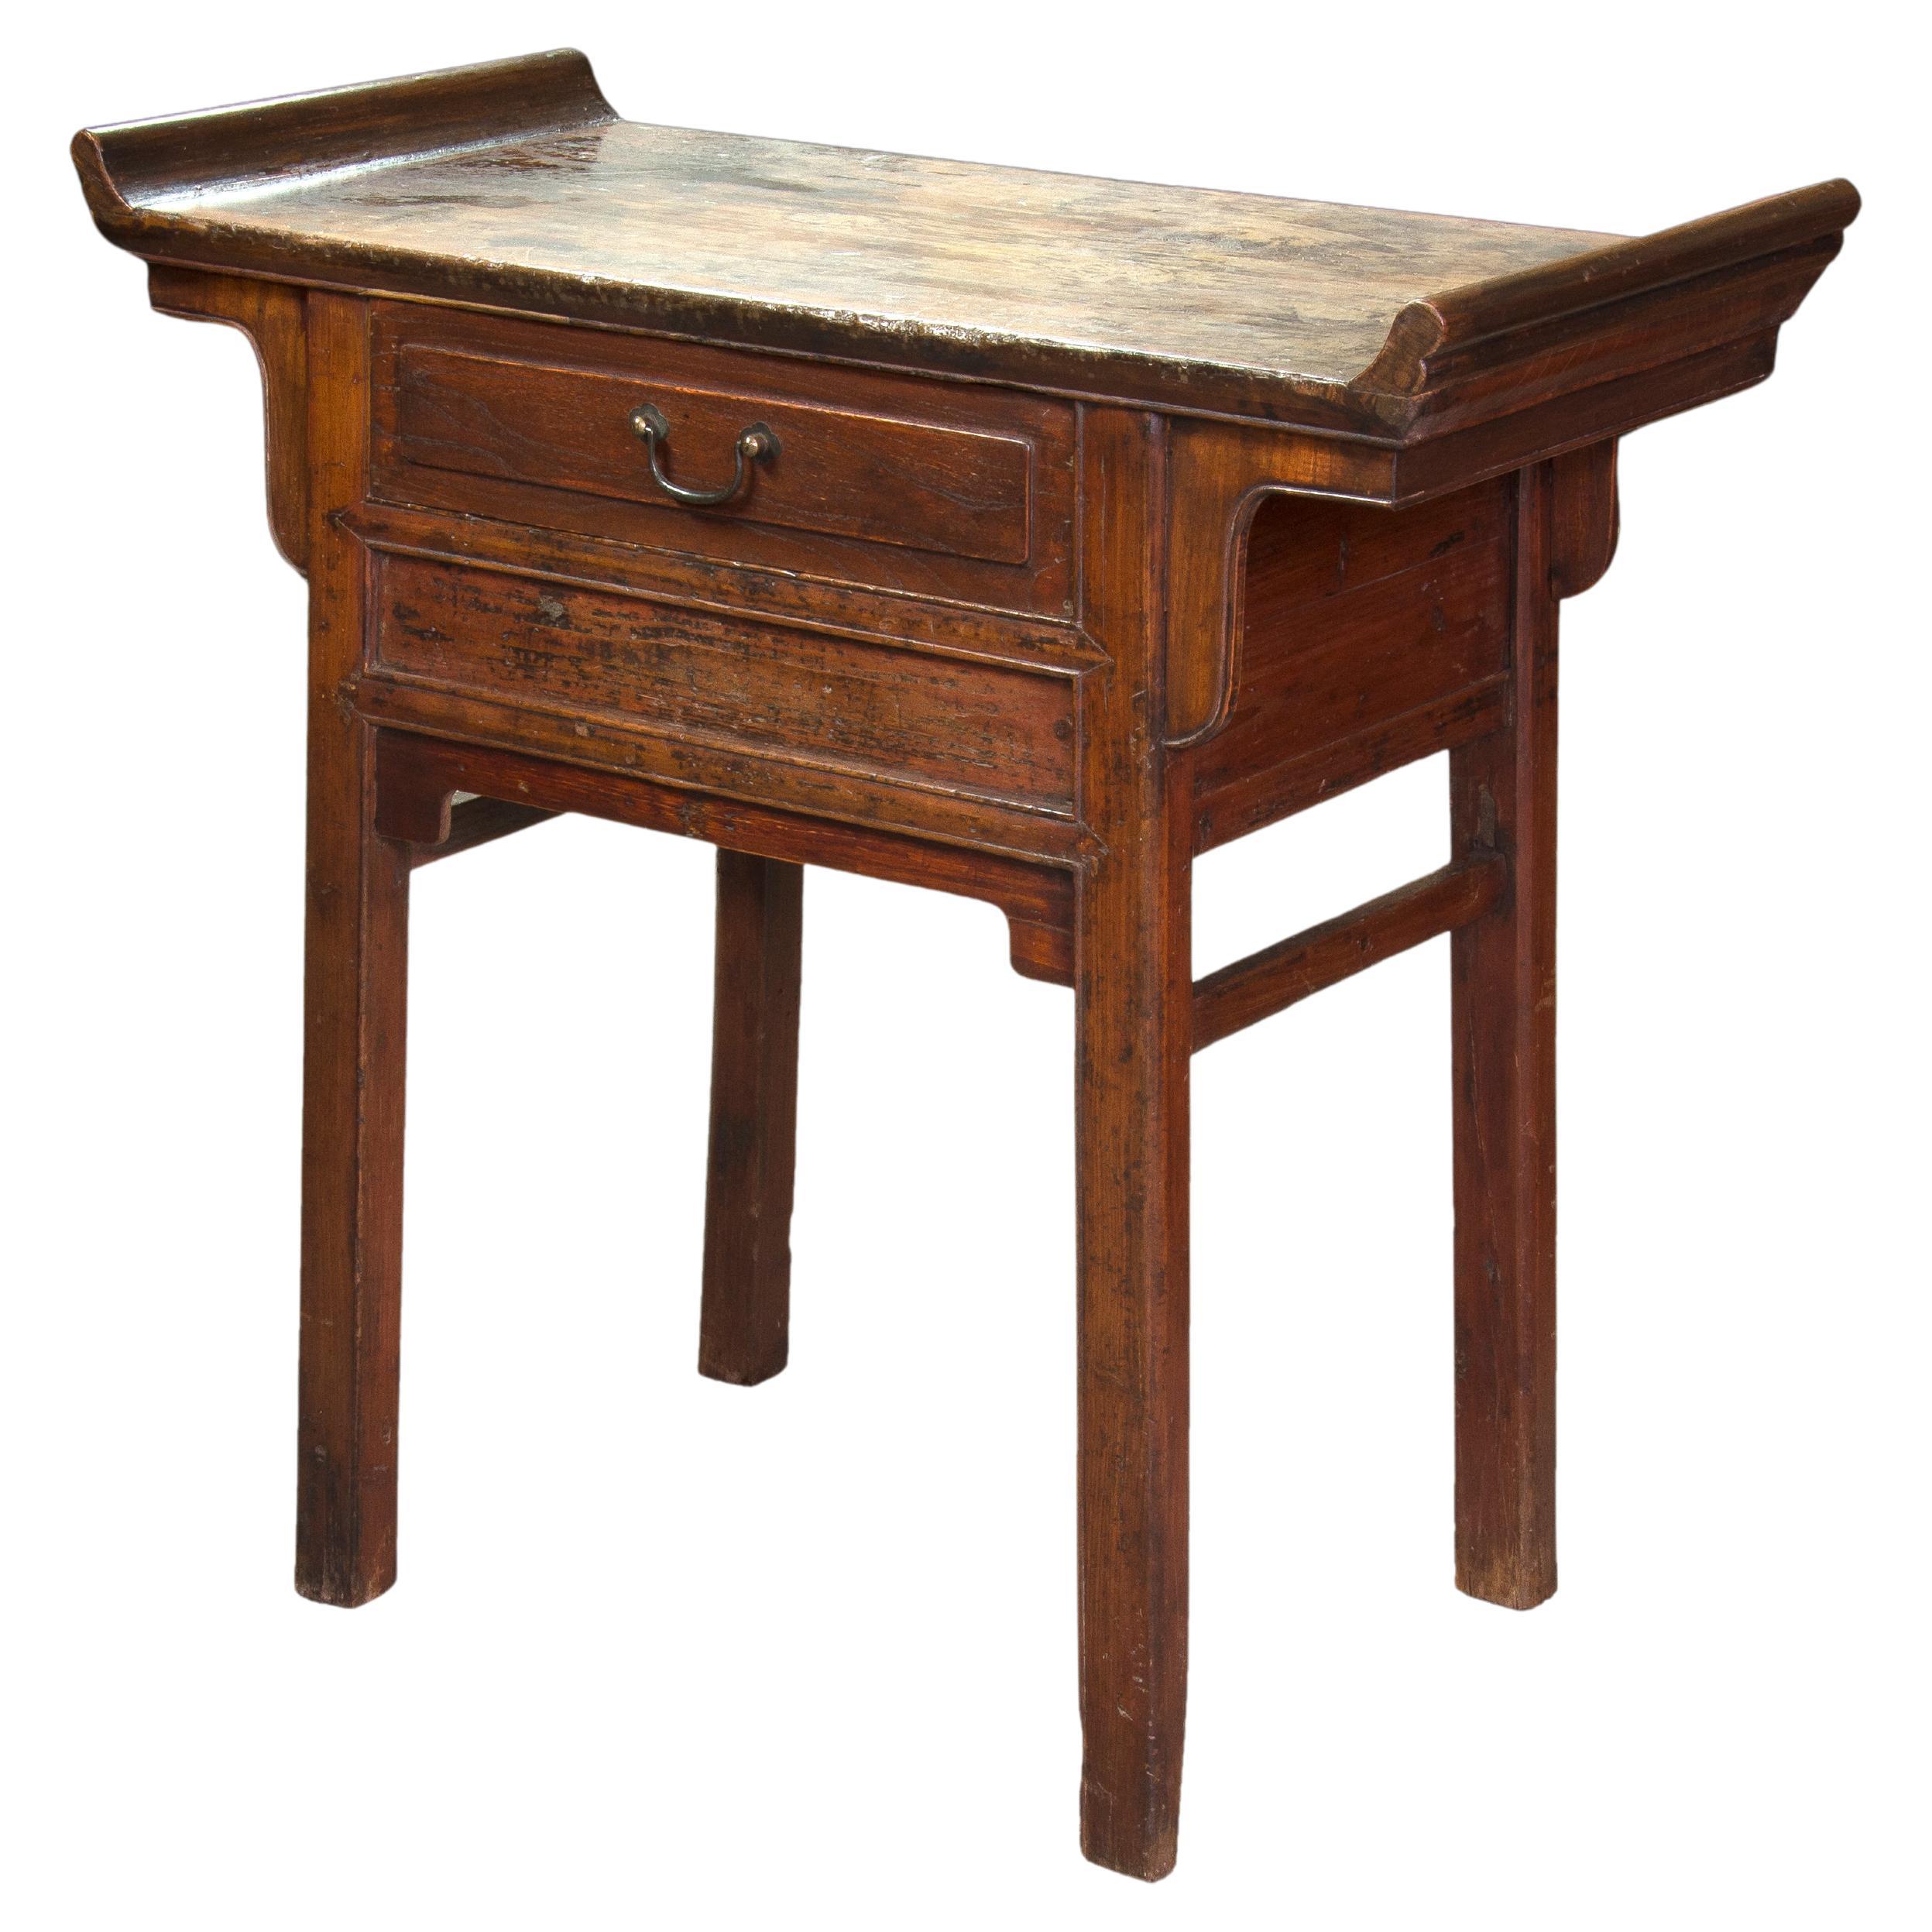 Table d'appoint orientale en Wood et metal&wood, 19e-20e siècles